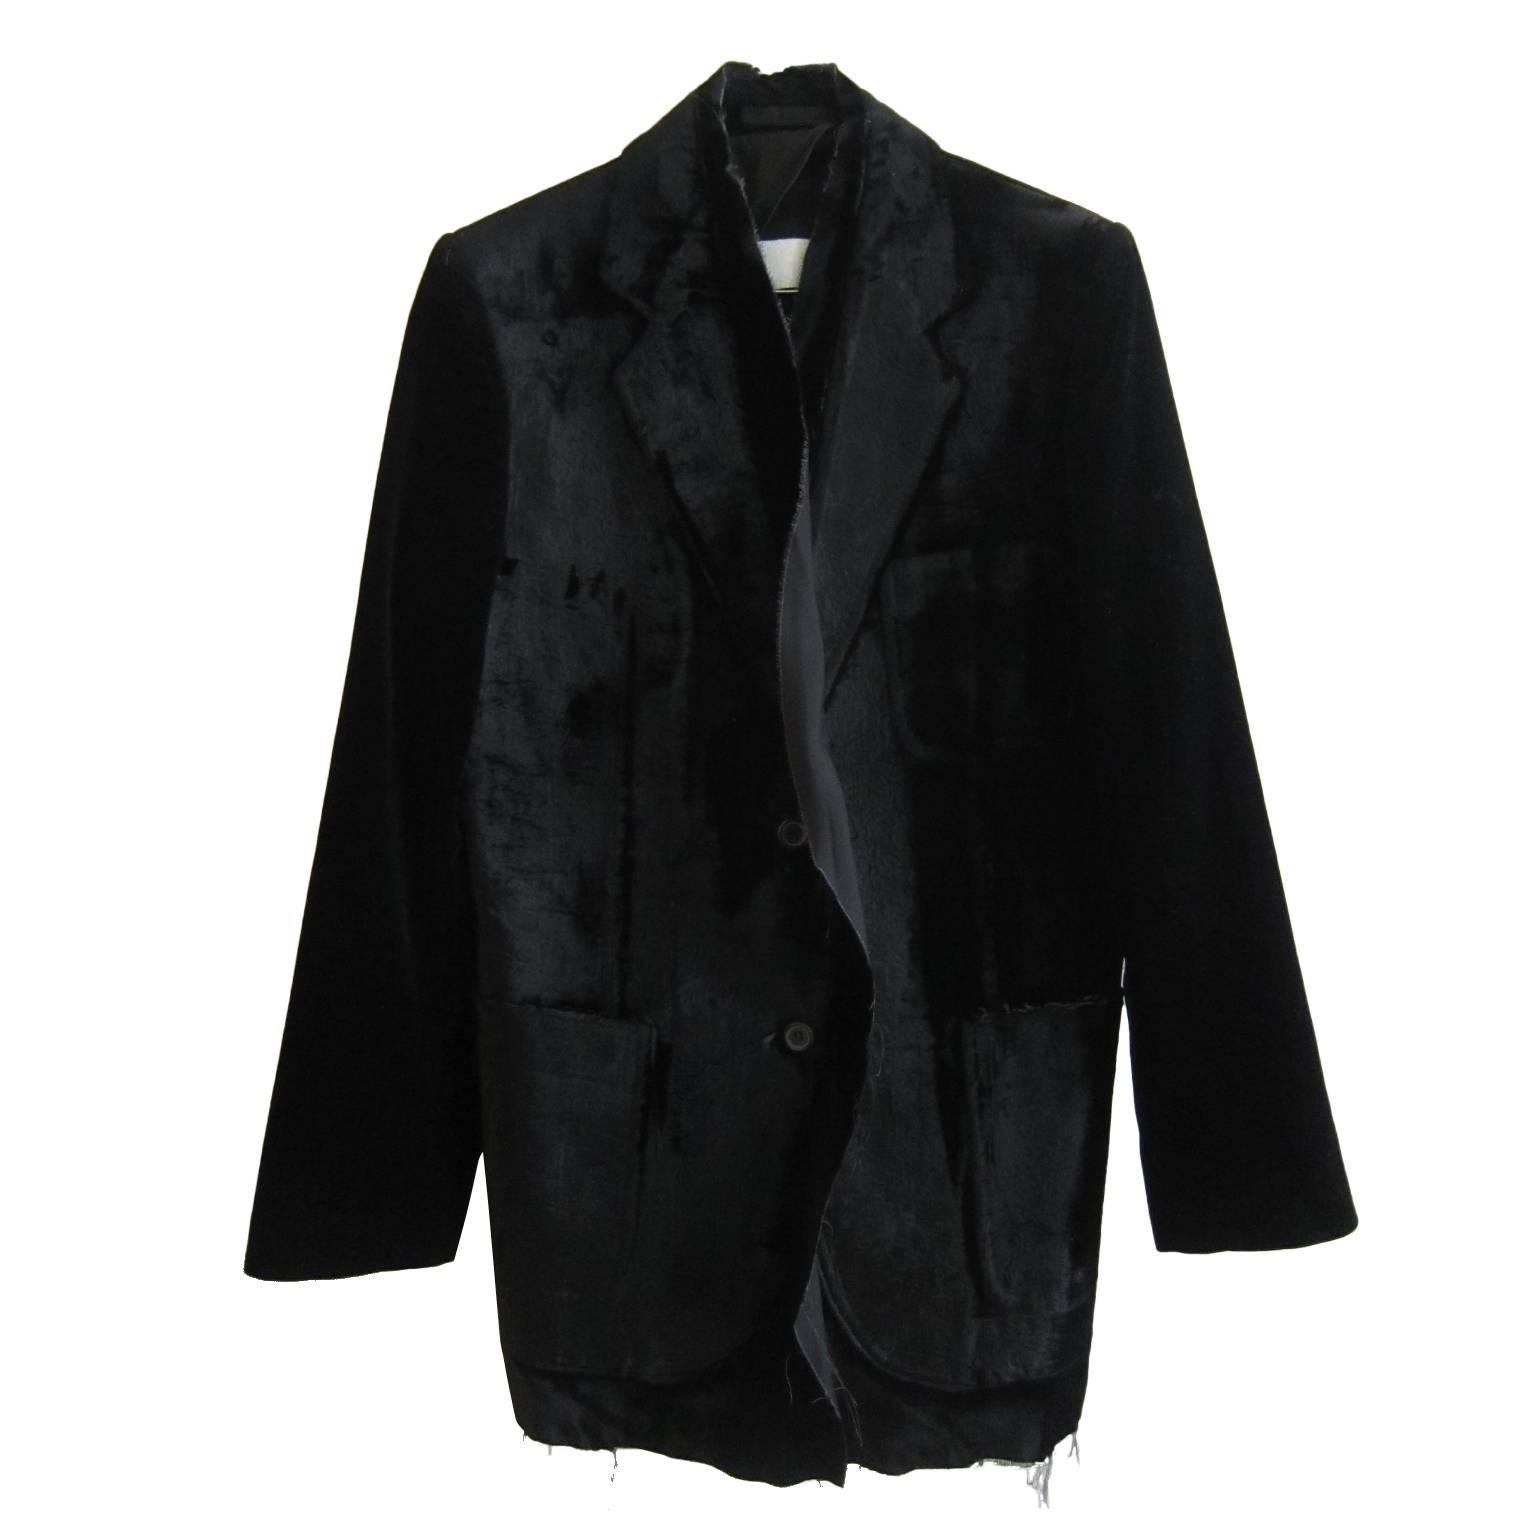 Martin Margiela Artisanal Black Velvet Jacket A/W 2001